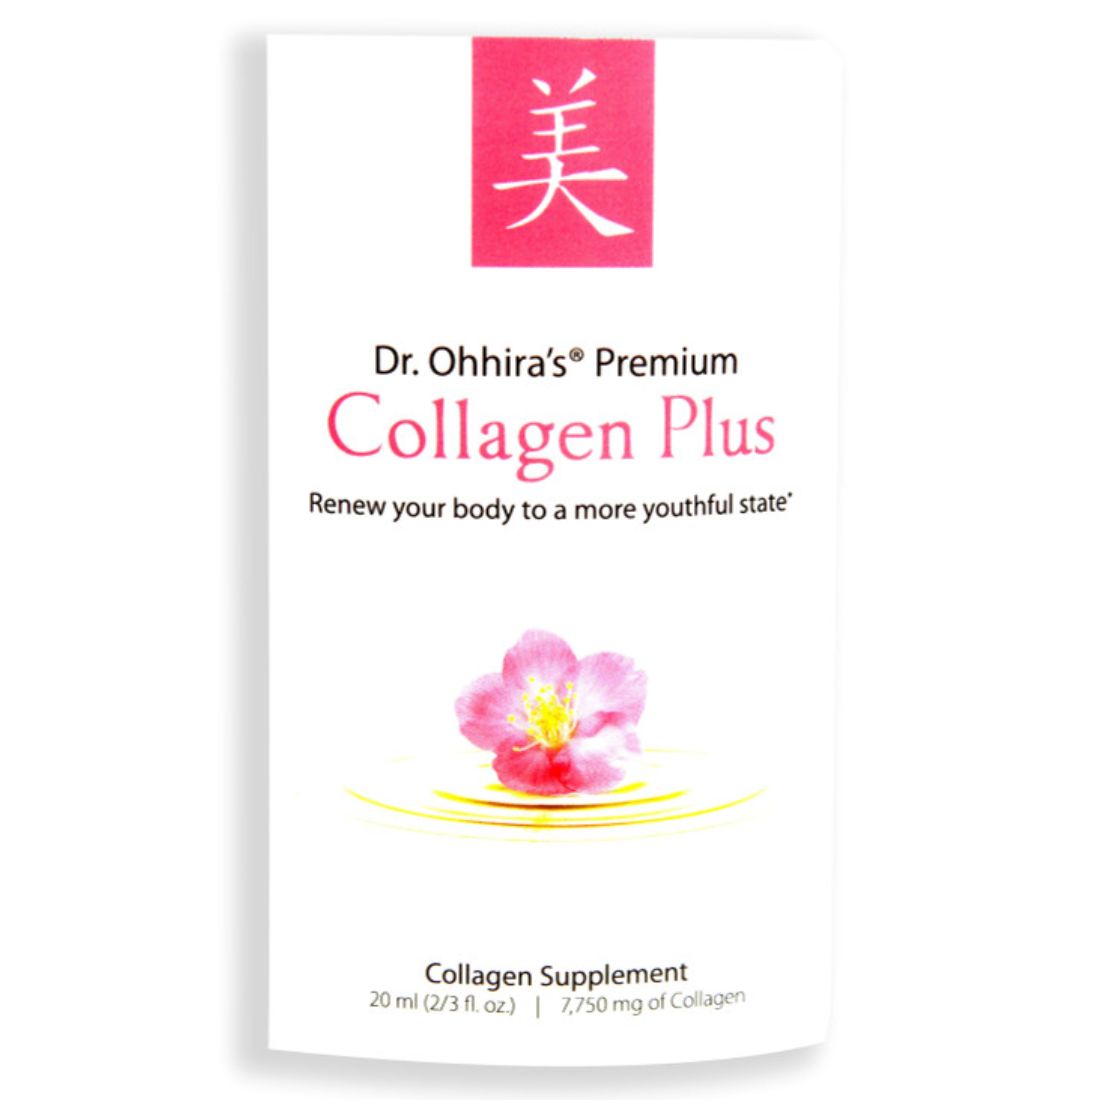 Dr. Ohhira’s Premium Collagen Plus Liquid Formula